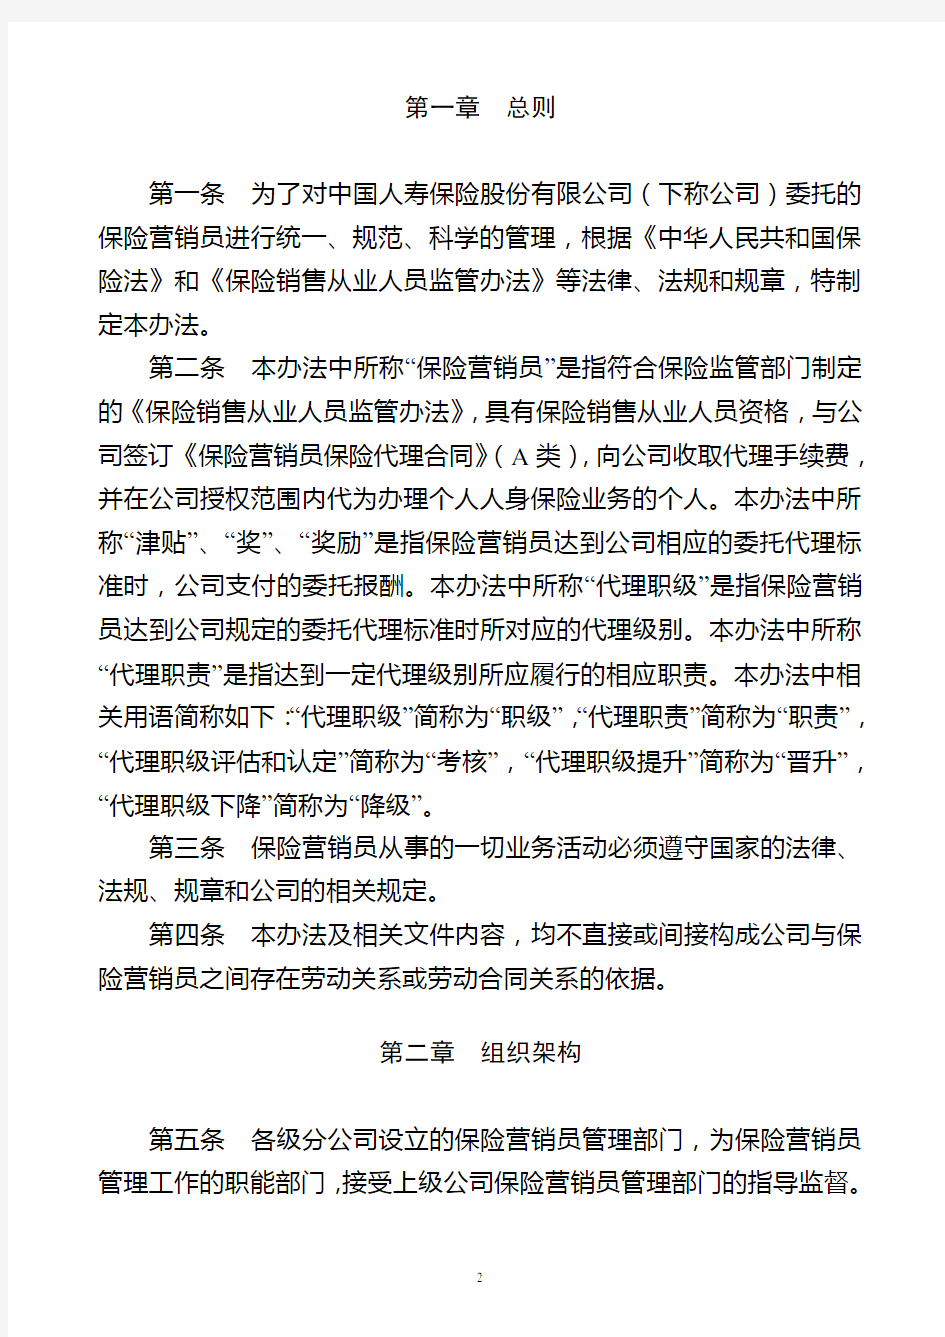 中国人寿基本法2015版